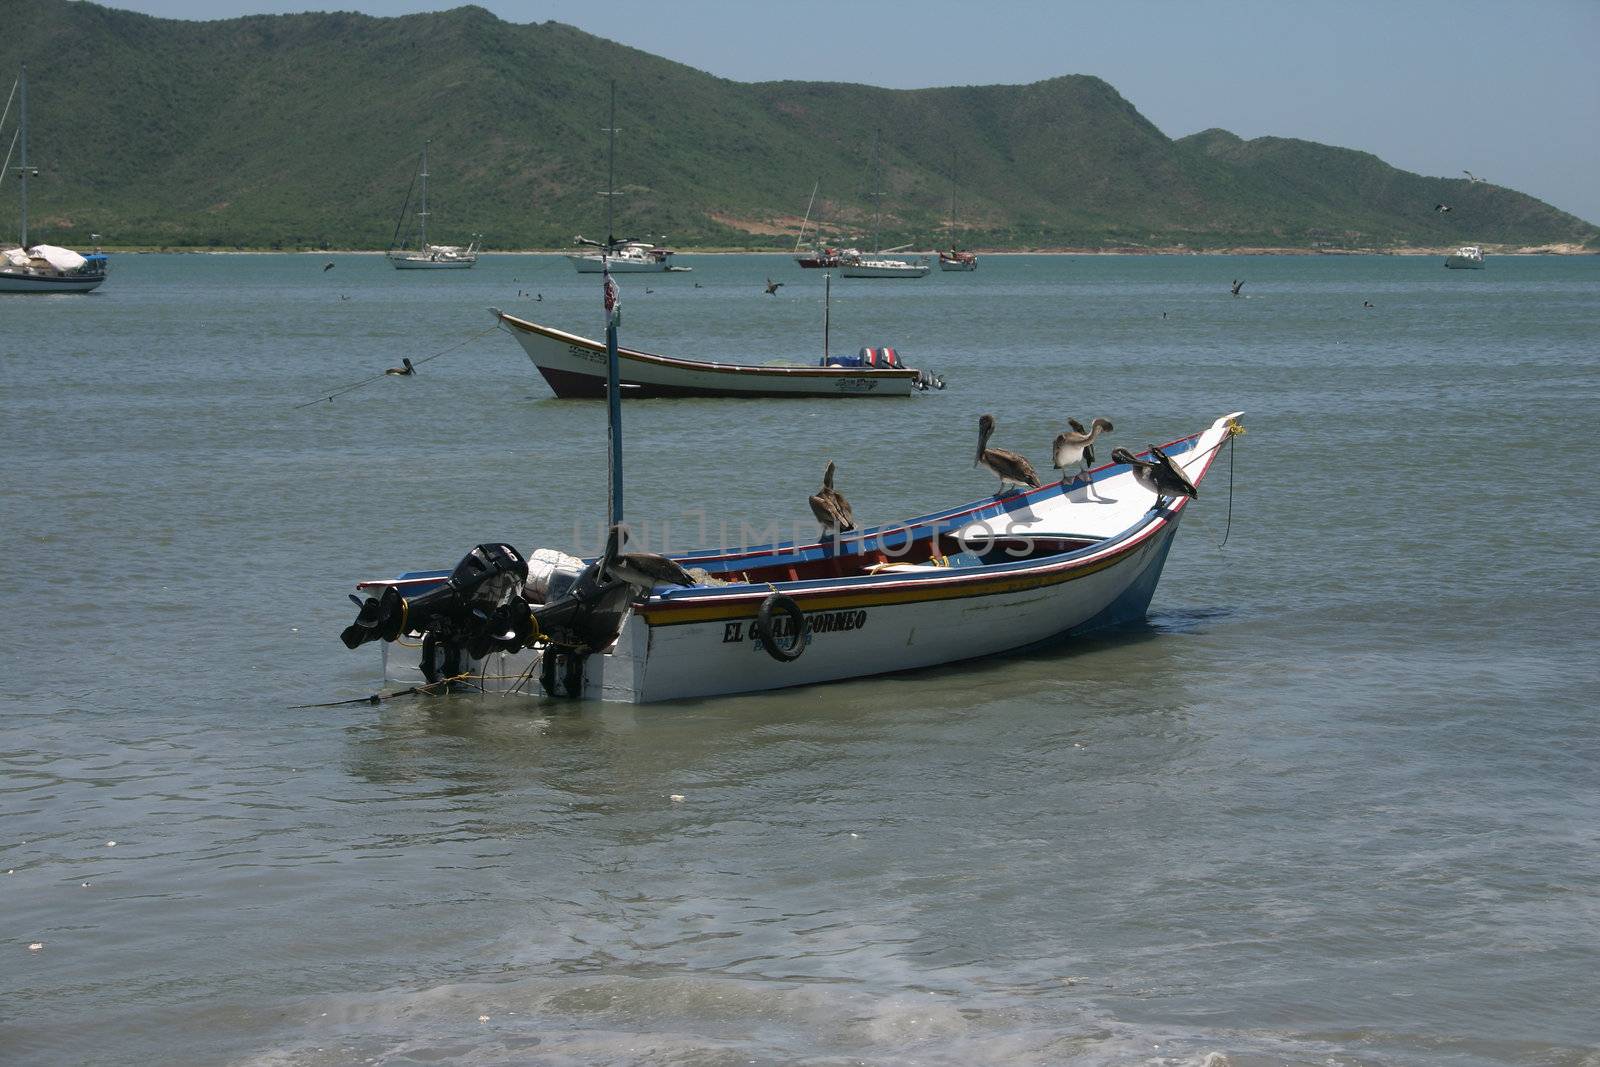 Boats in the harbor of Juan Griego on Isla de Margarita in Venezuela